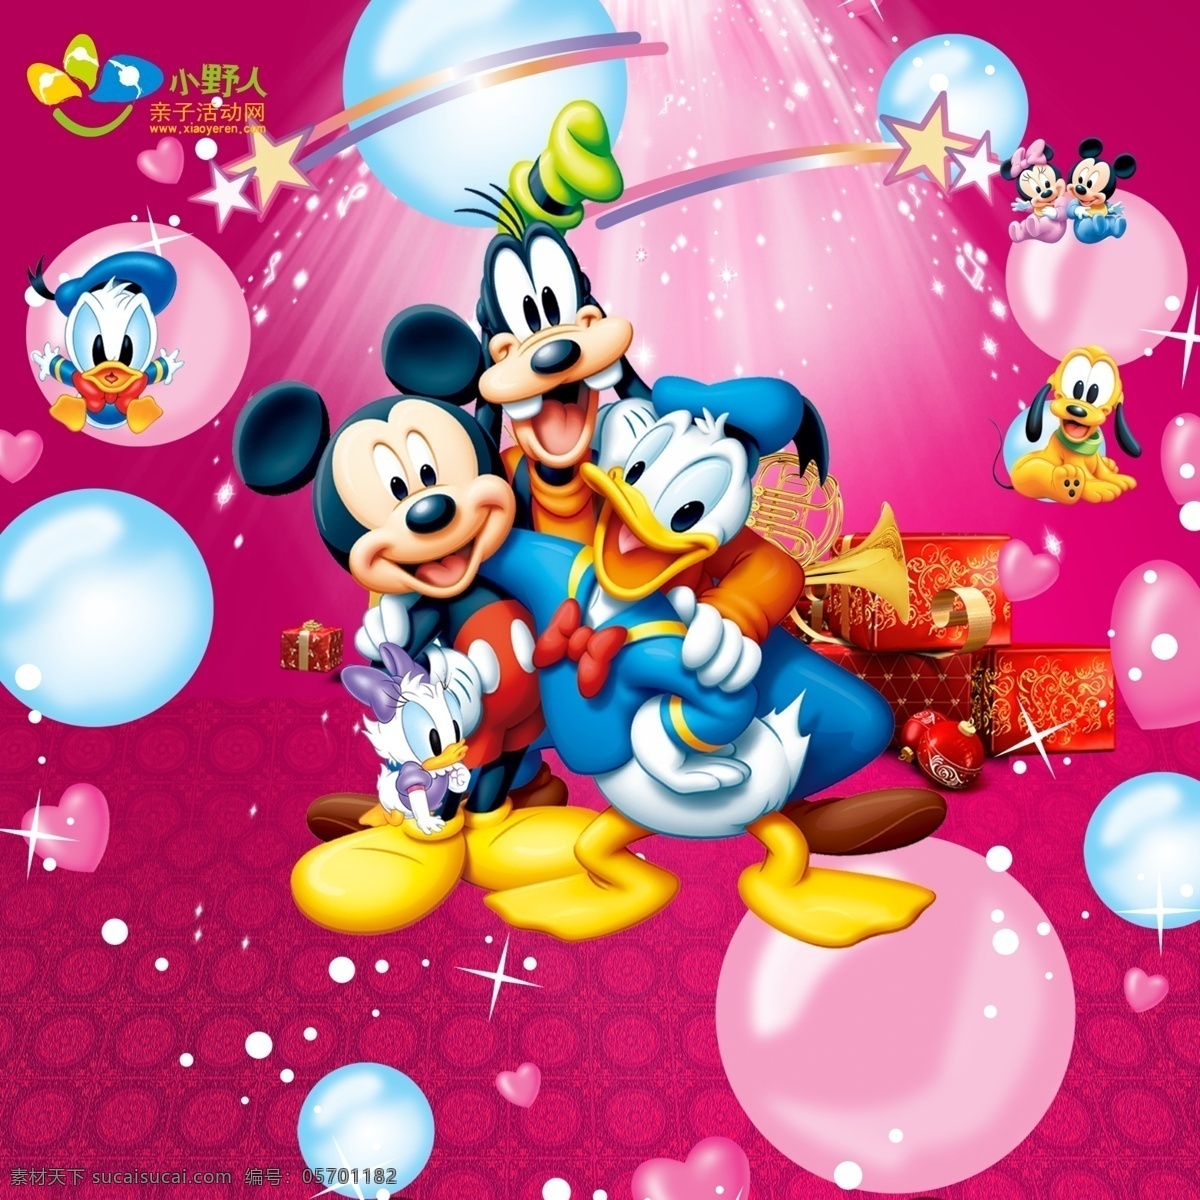 米老鼠 唐老鸭 迪士尼 卡通乐园 儿童节 欢乐 粉色 超大 高清 泡泡 星星